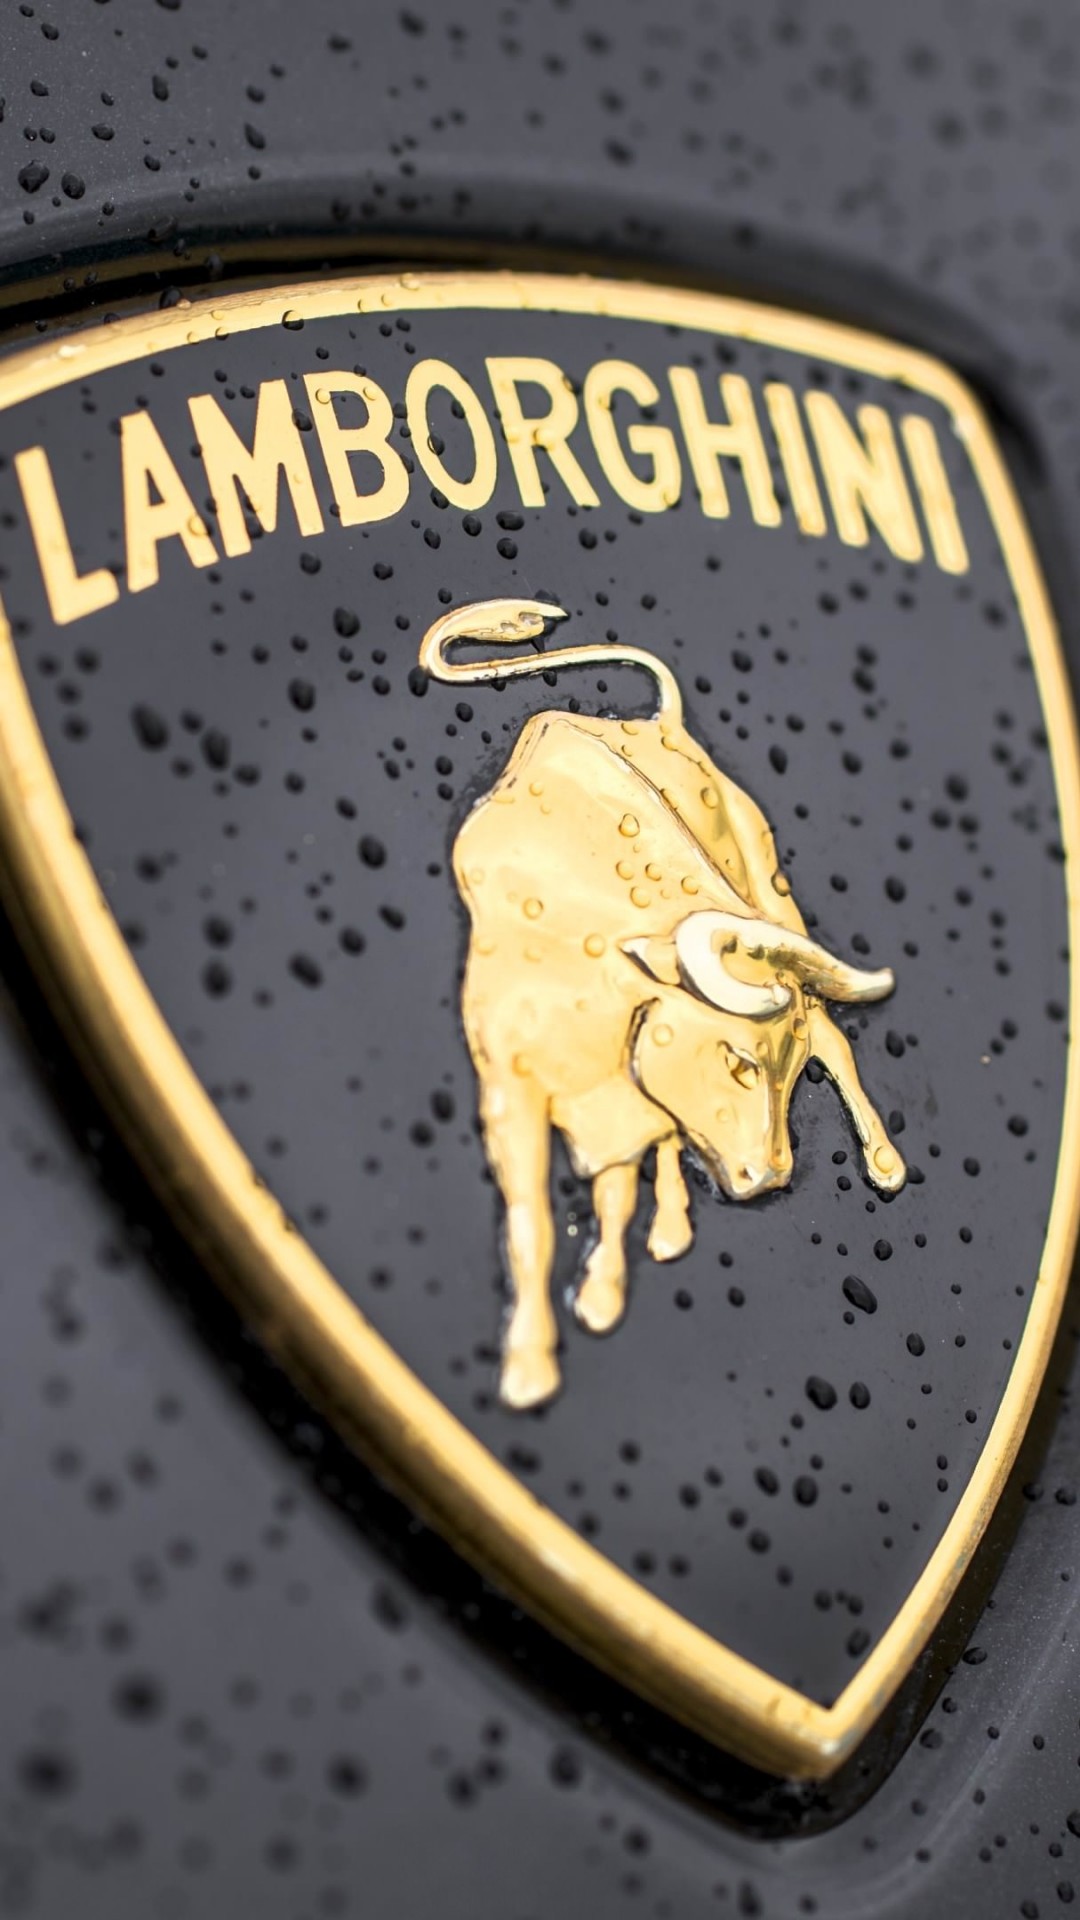 Lamborghini Logo Wallpaper for LG G2